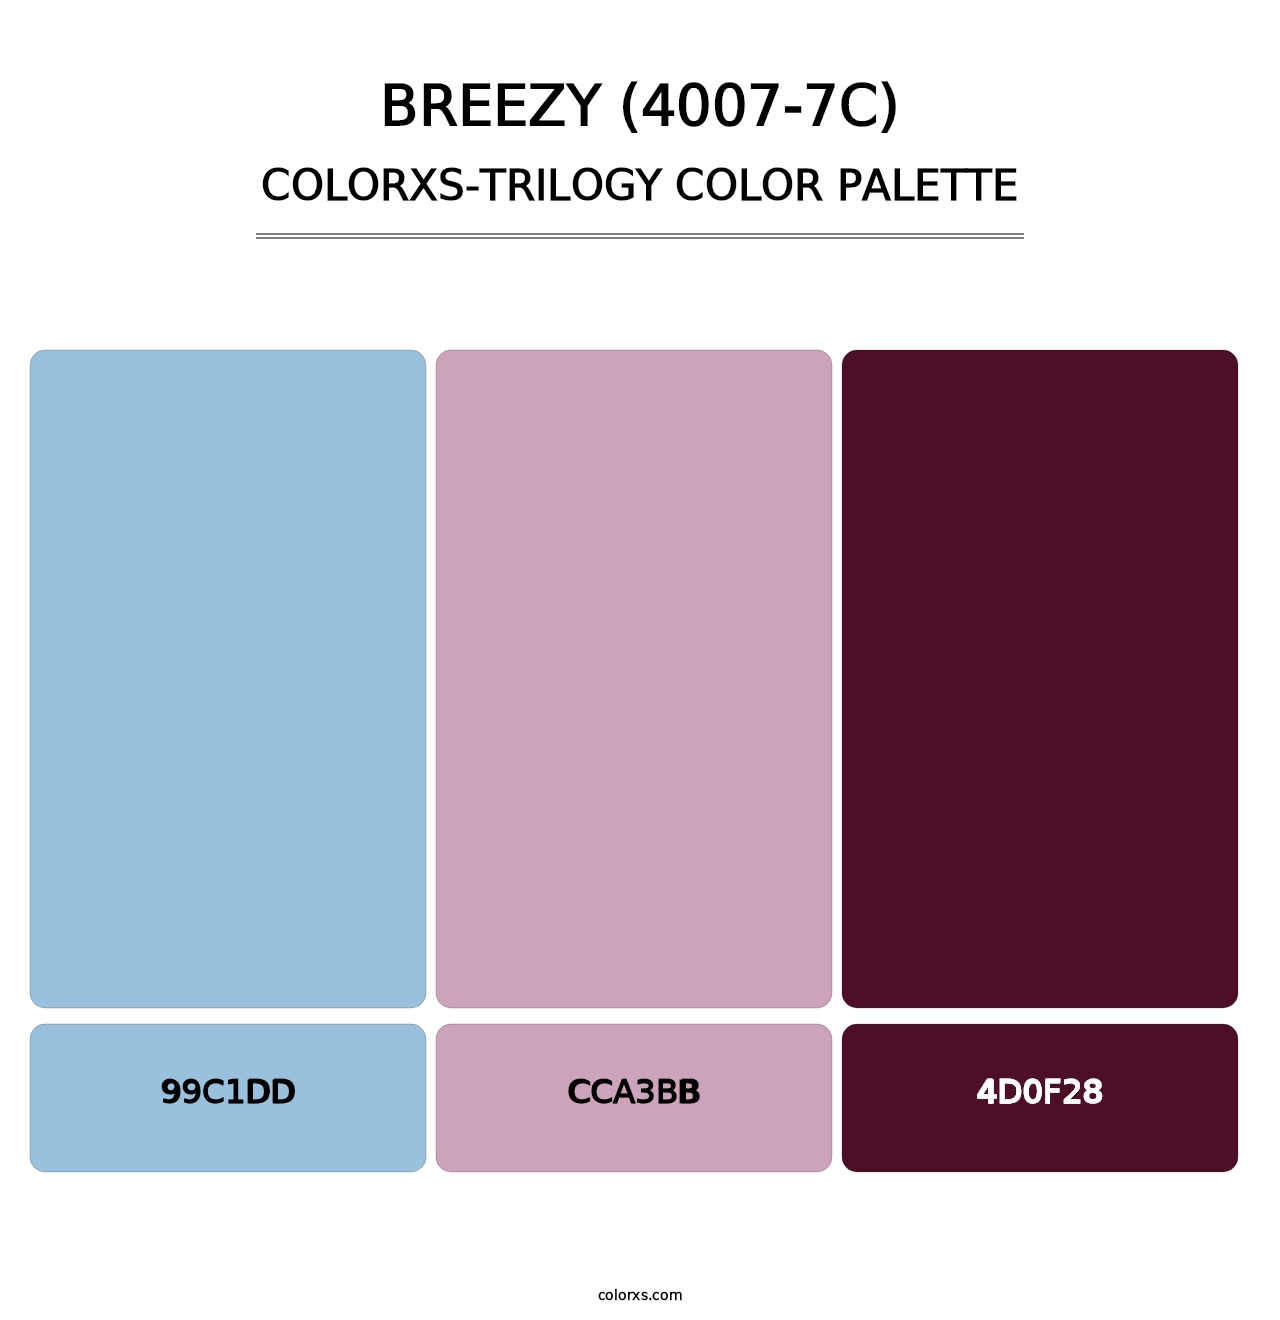 Breezy (4007-7C) - Colorxs Trilogy Palette